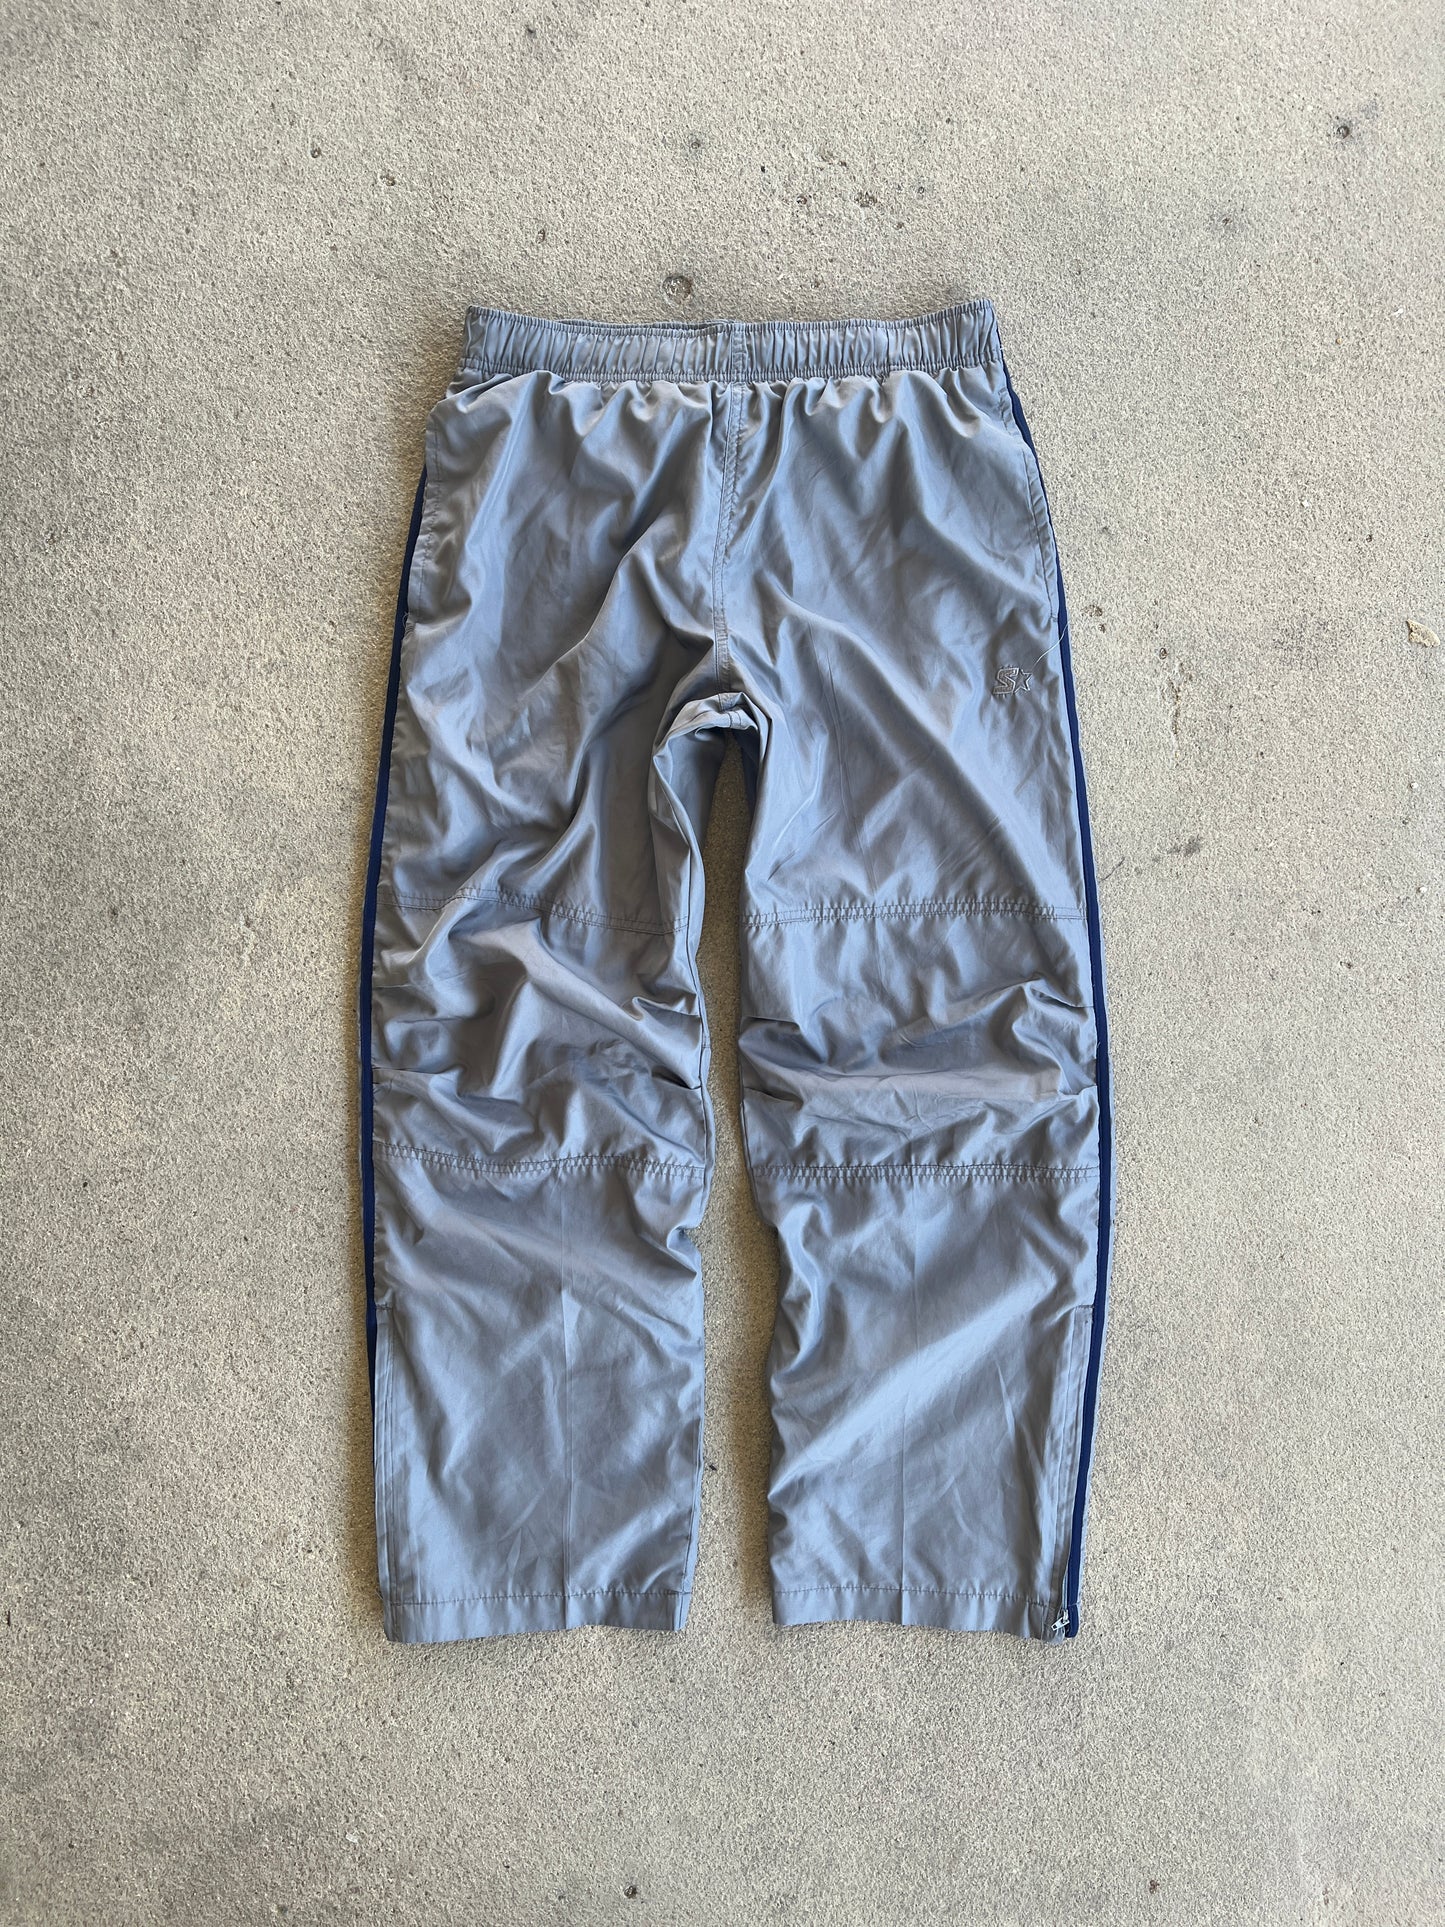 Vintage Grey Starter Track Pants - M